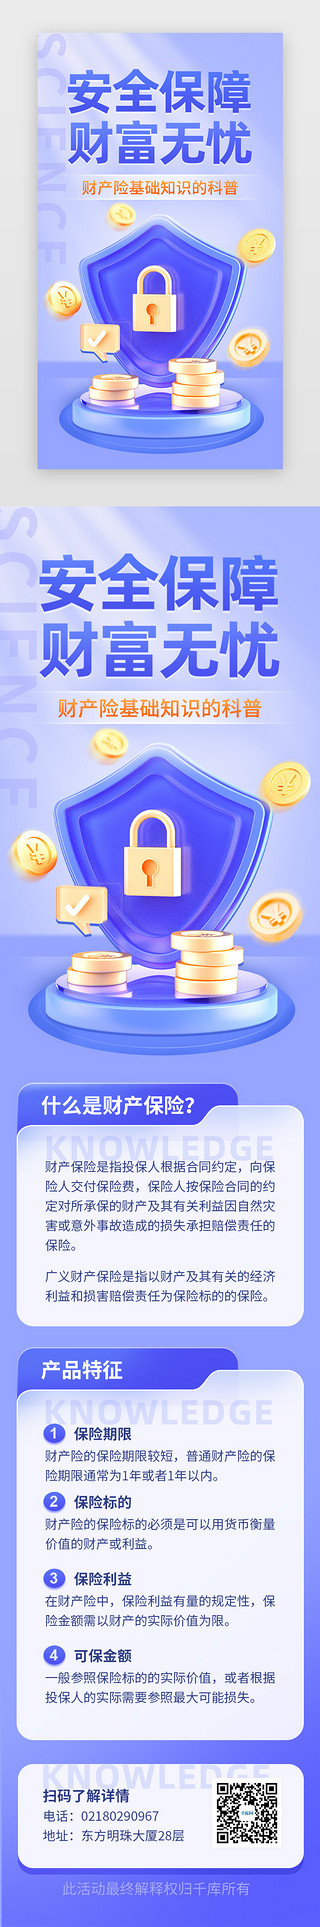 橘黄色盾牌UI设计素材_财产保险知识科普app主界面立体蓝紫盾牌